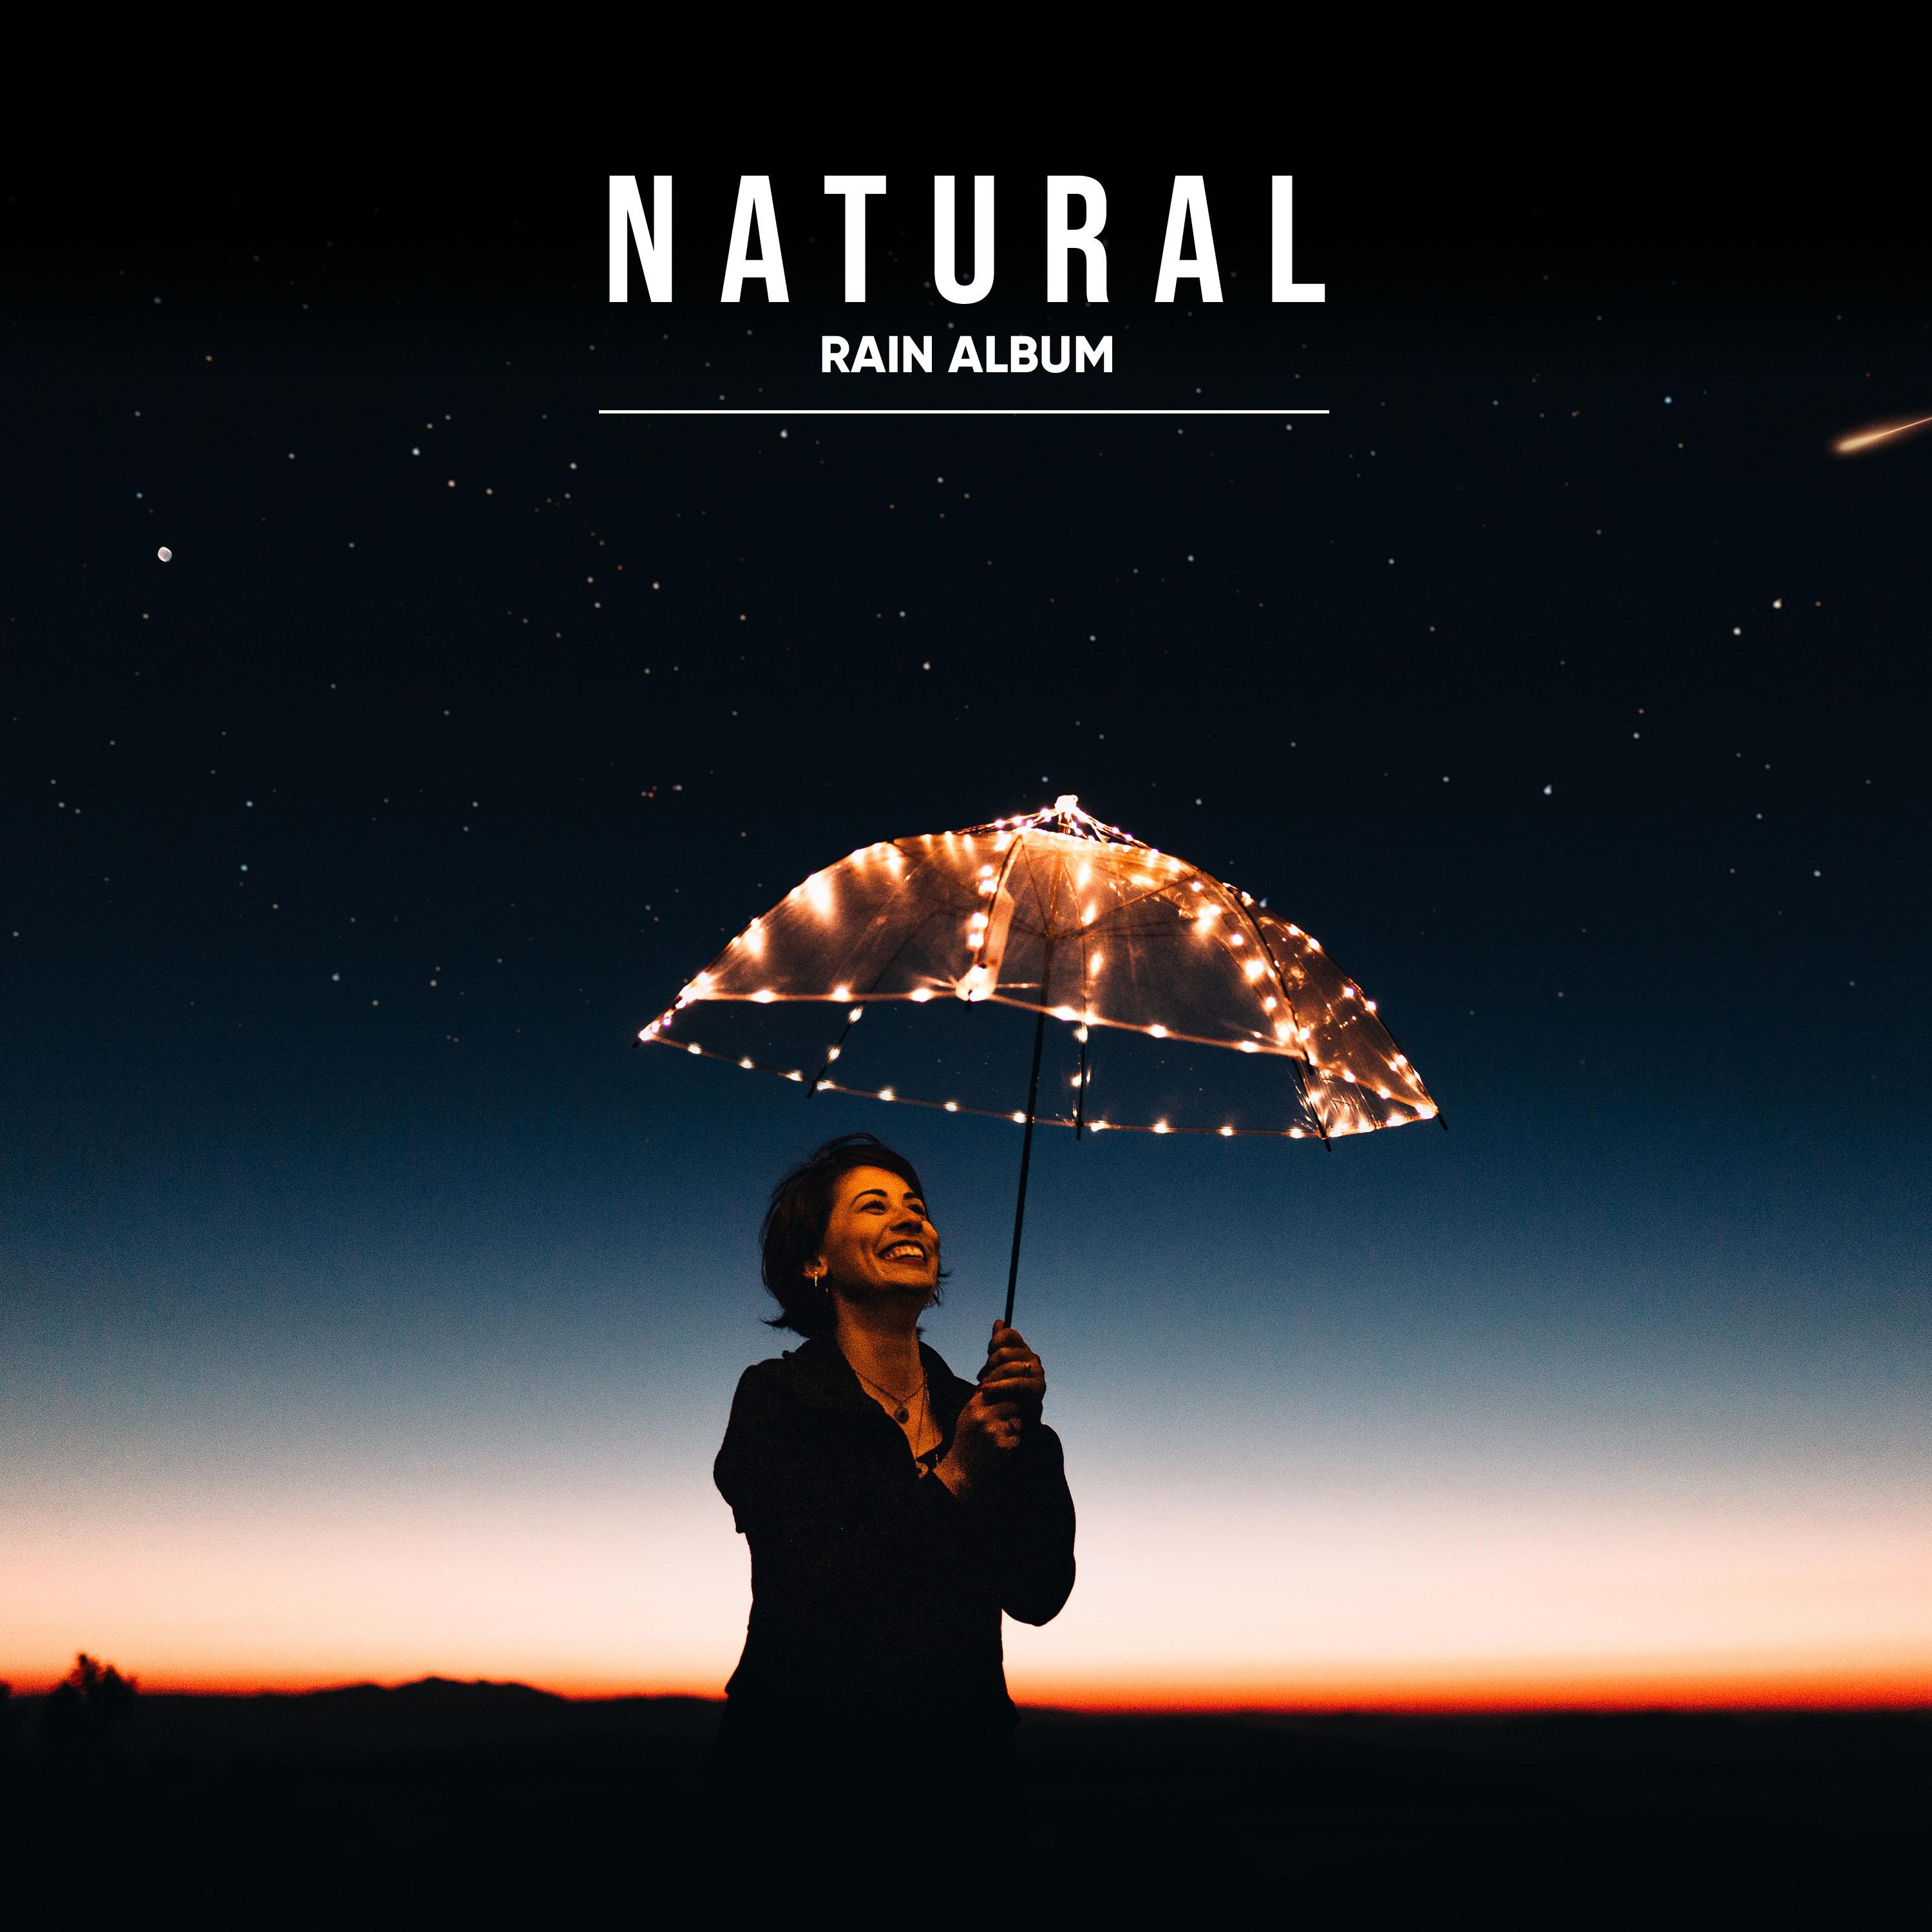 19 Natural Rain Album for Calm Inside